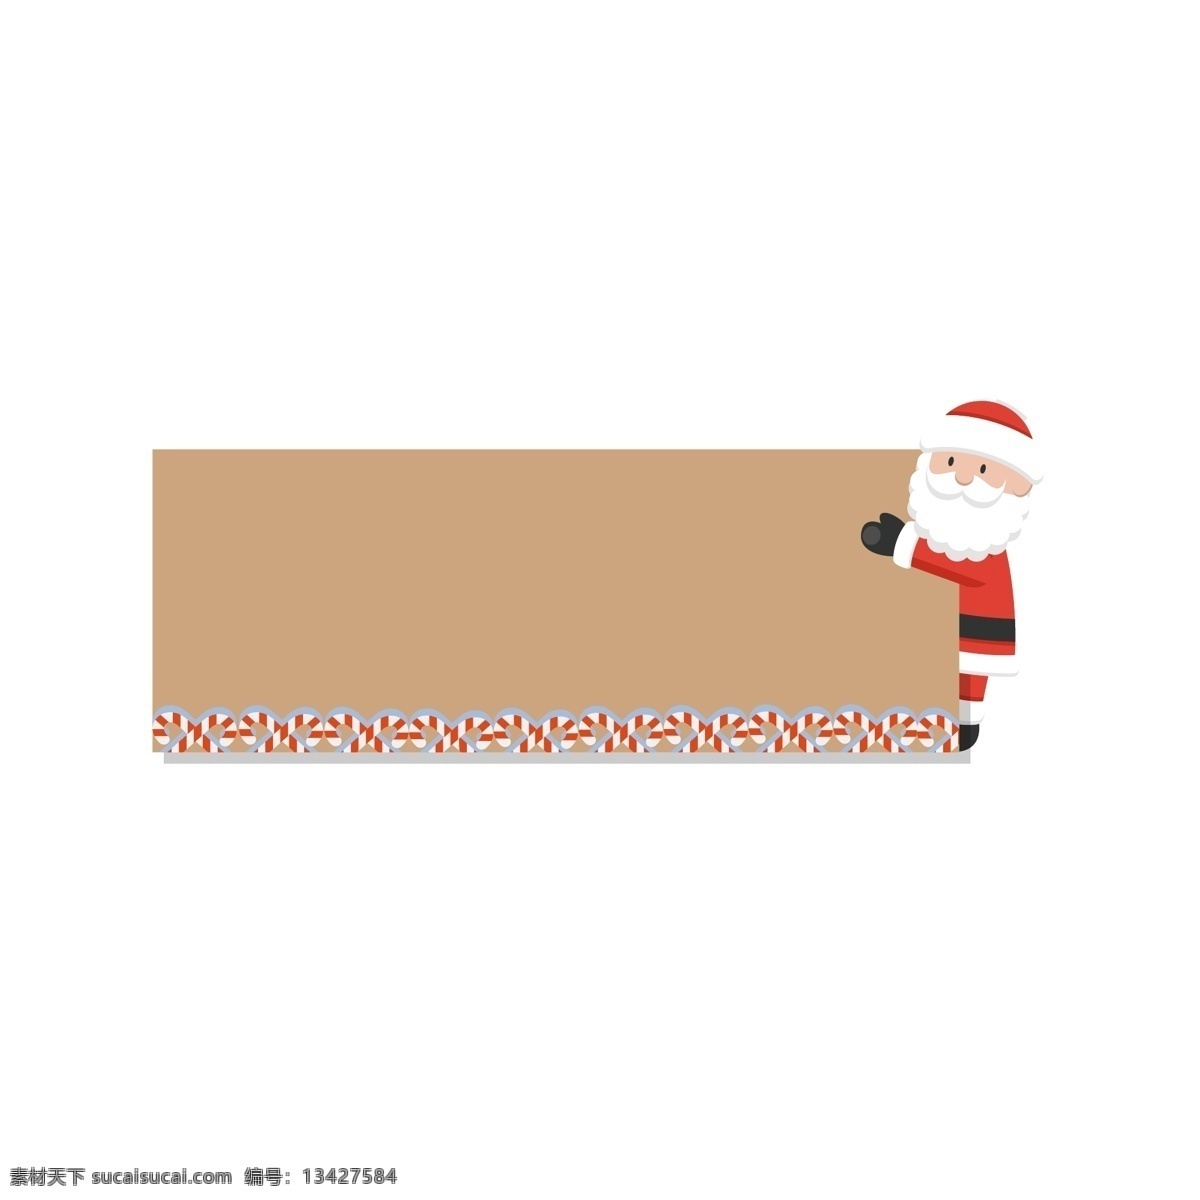 圣诞节 促销活动 标签 对话框 节日标签 卡通边框 扁平 简洁 戴帽子 圣诞老人 手绘